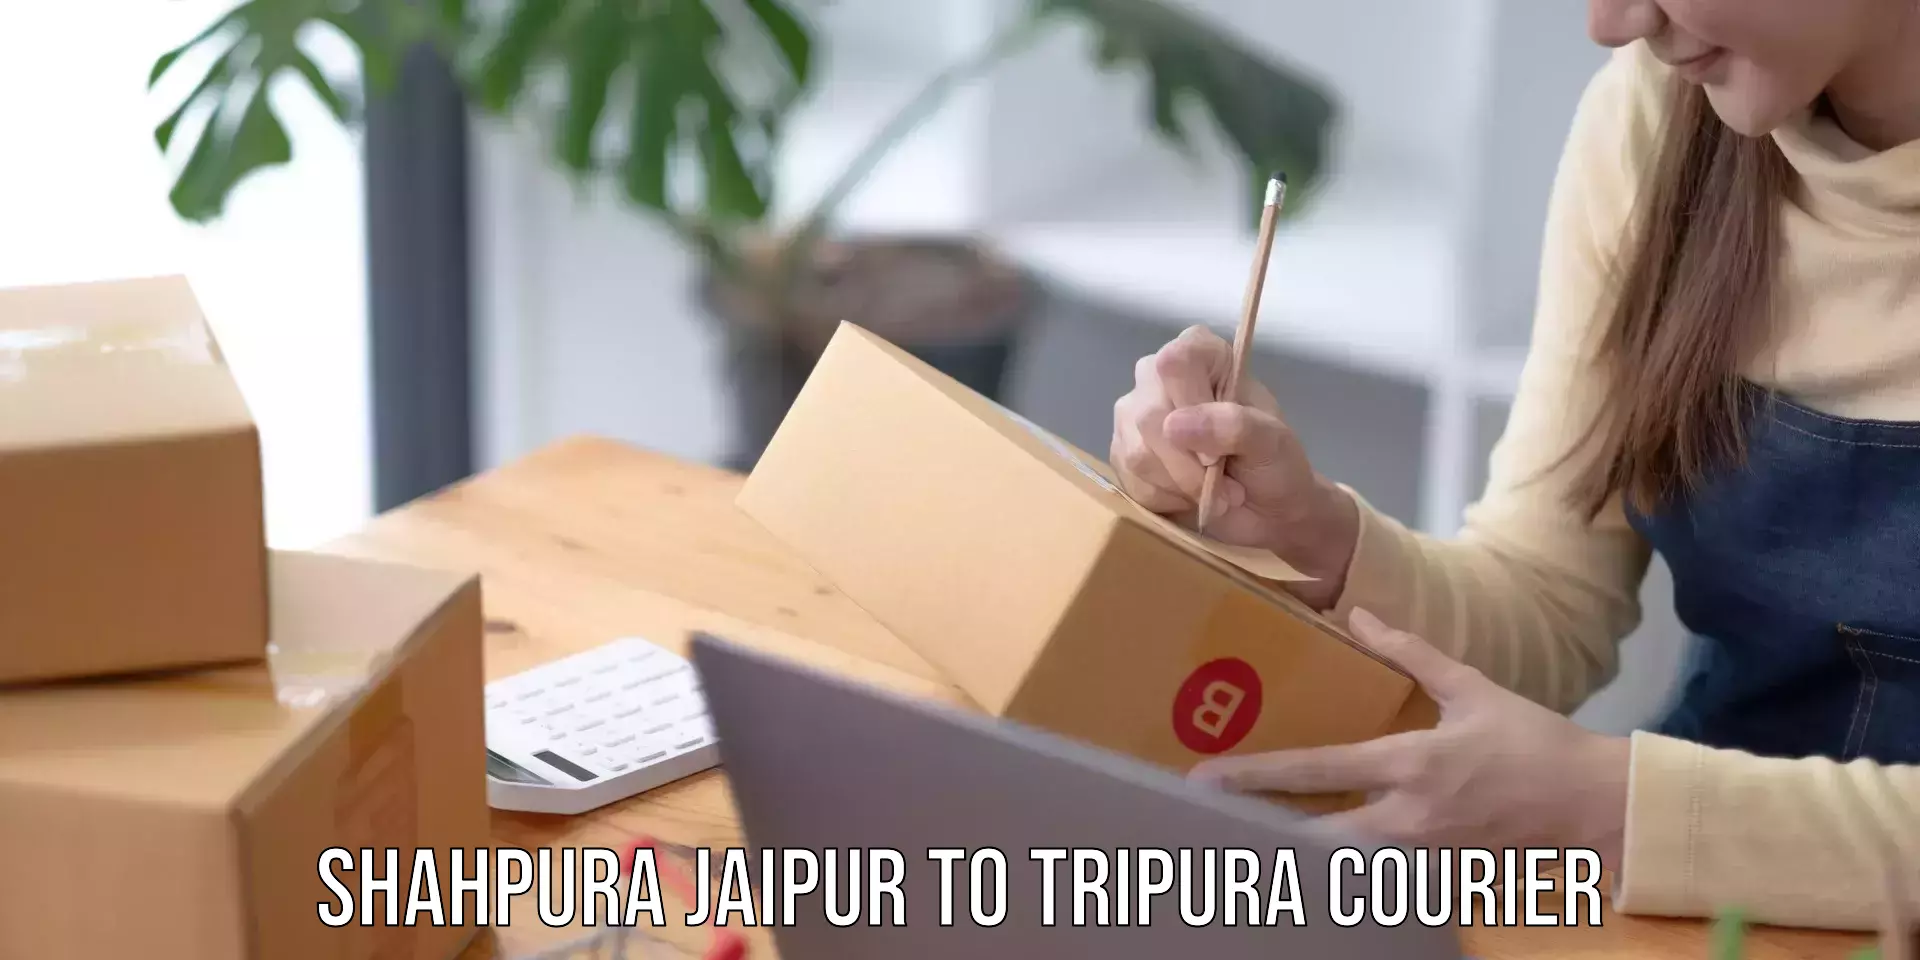 High-capacity parcel service Shahpura Jaipur to Udaipur Tripura